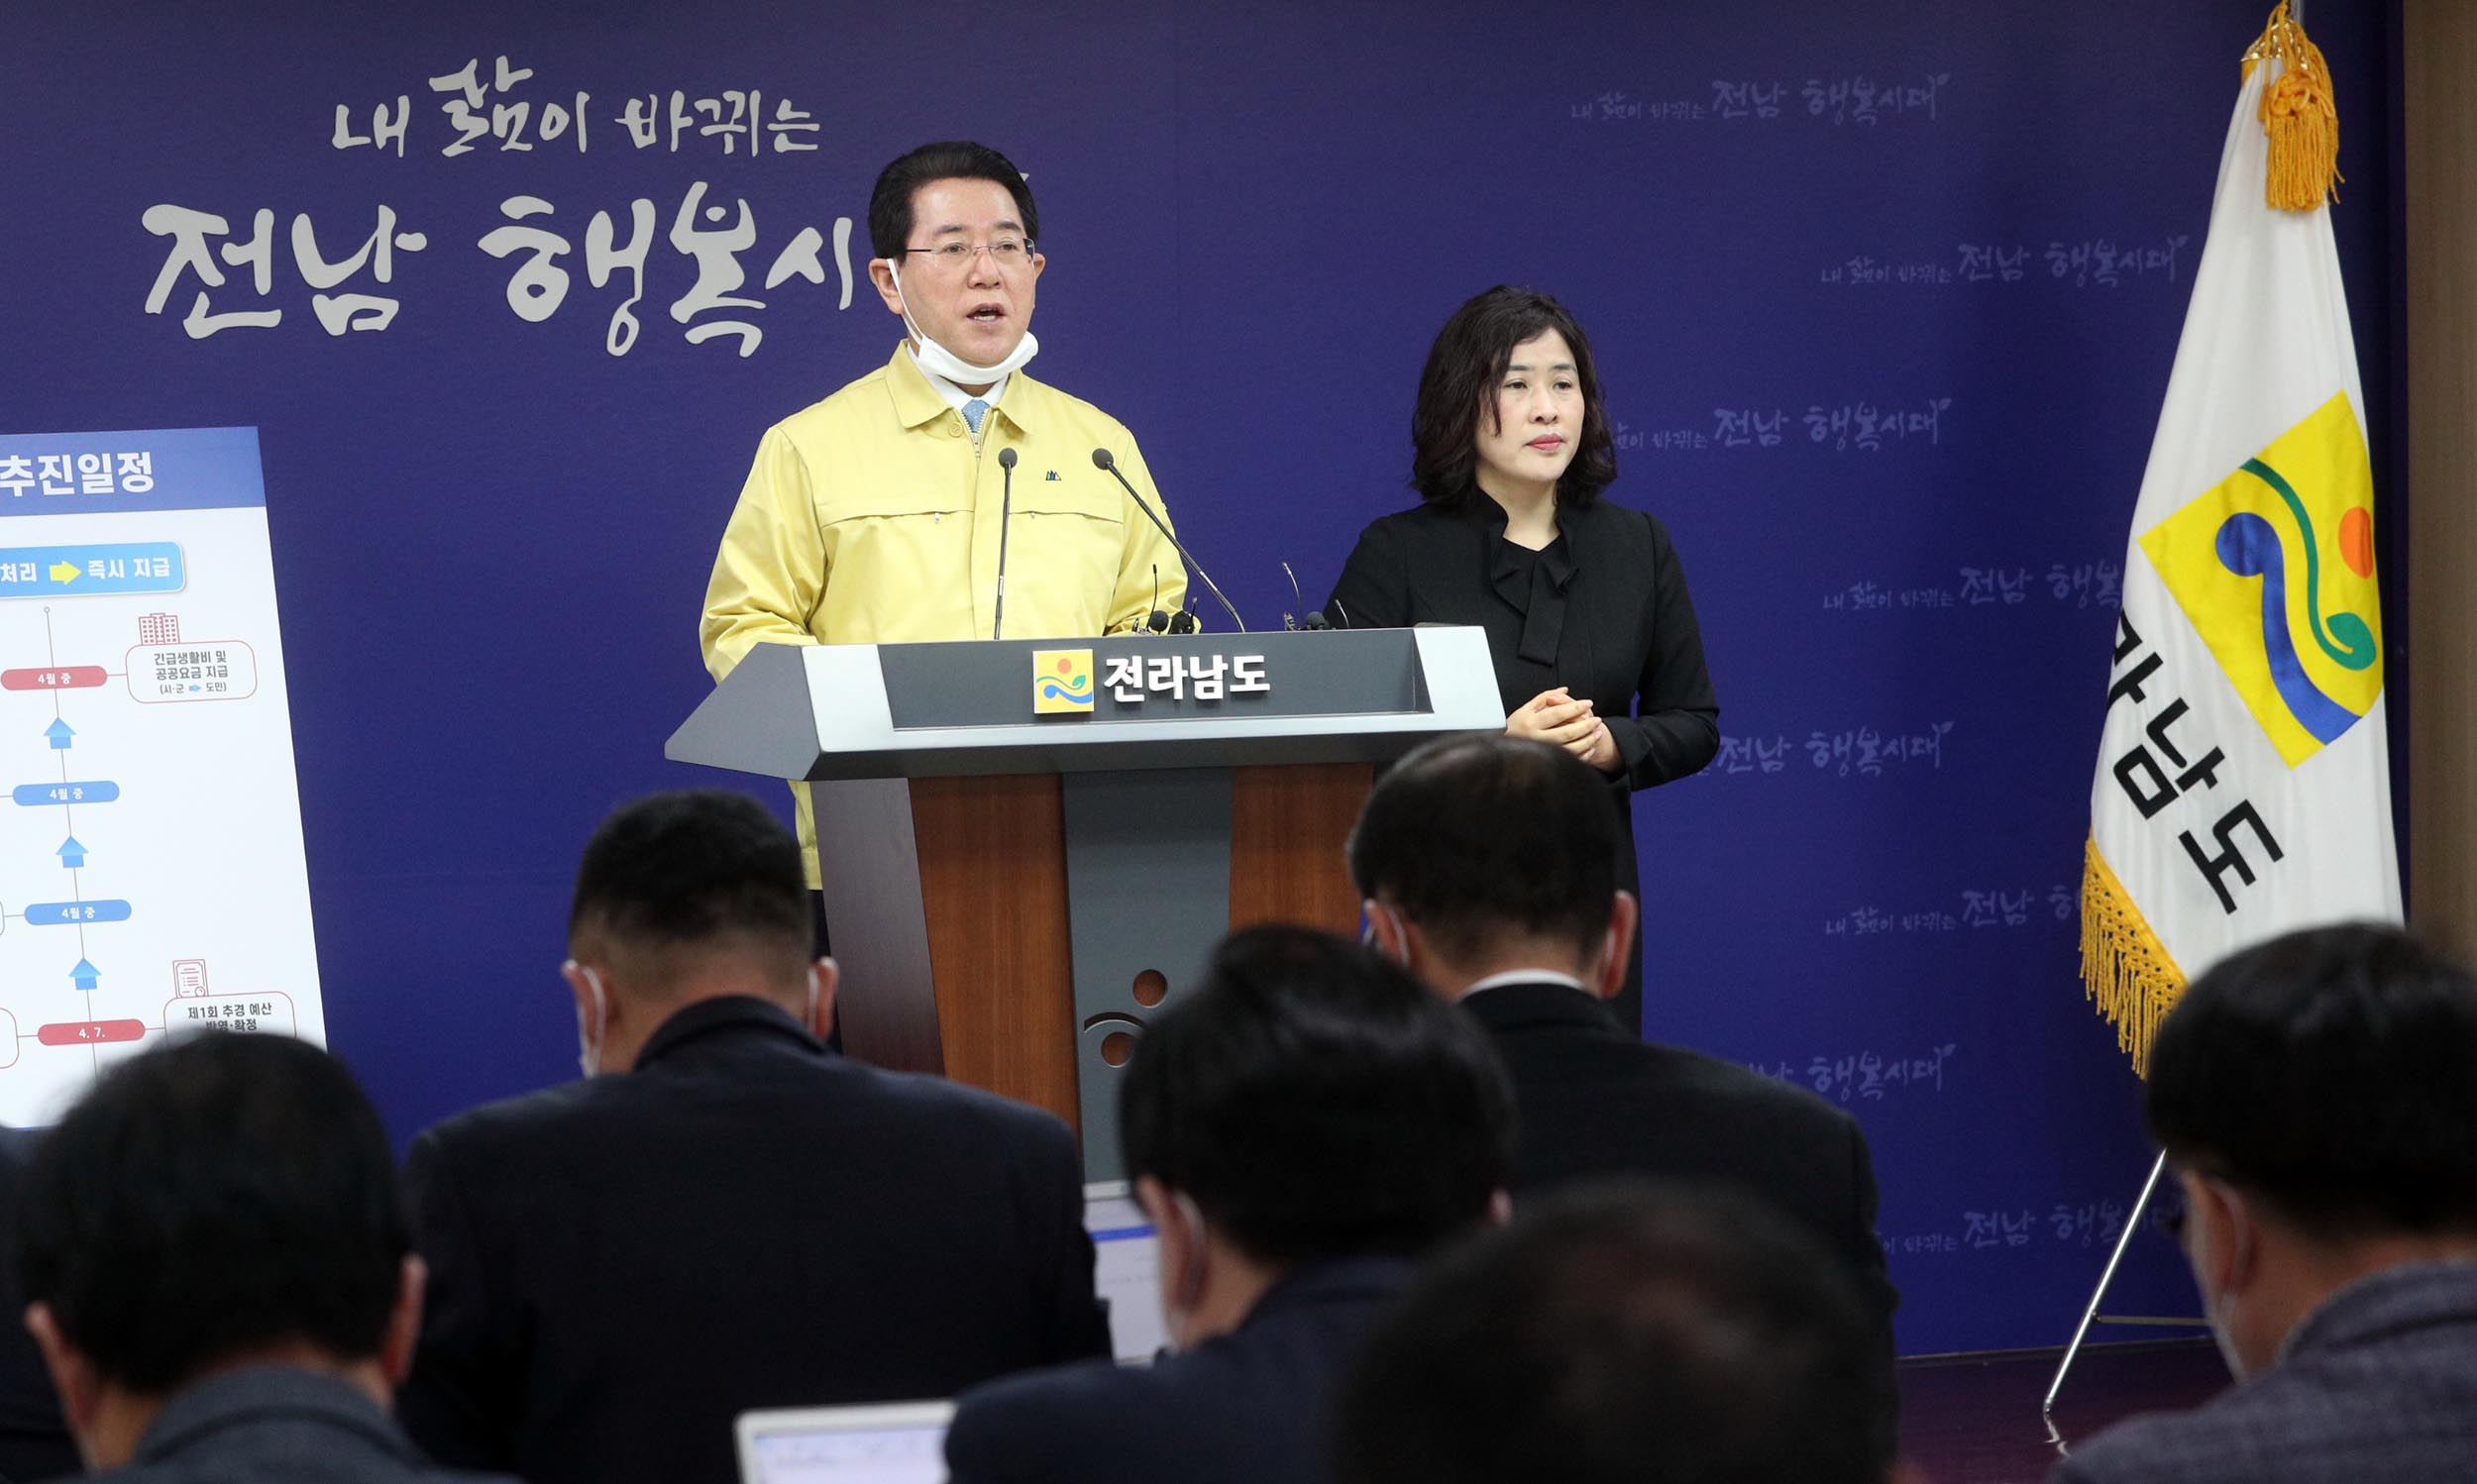 ‘코로나19’ 위기 극복 긴급 민생지원 안정종합대책 담화문 발표4